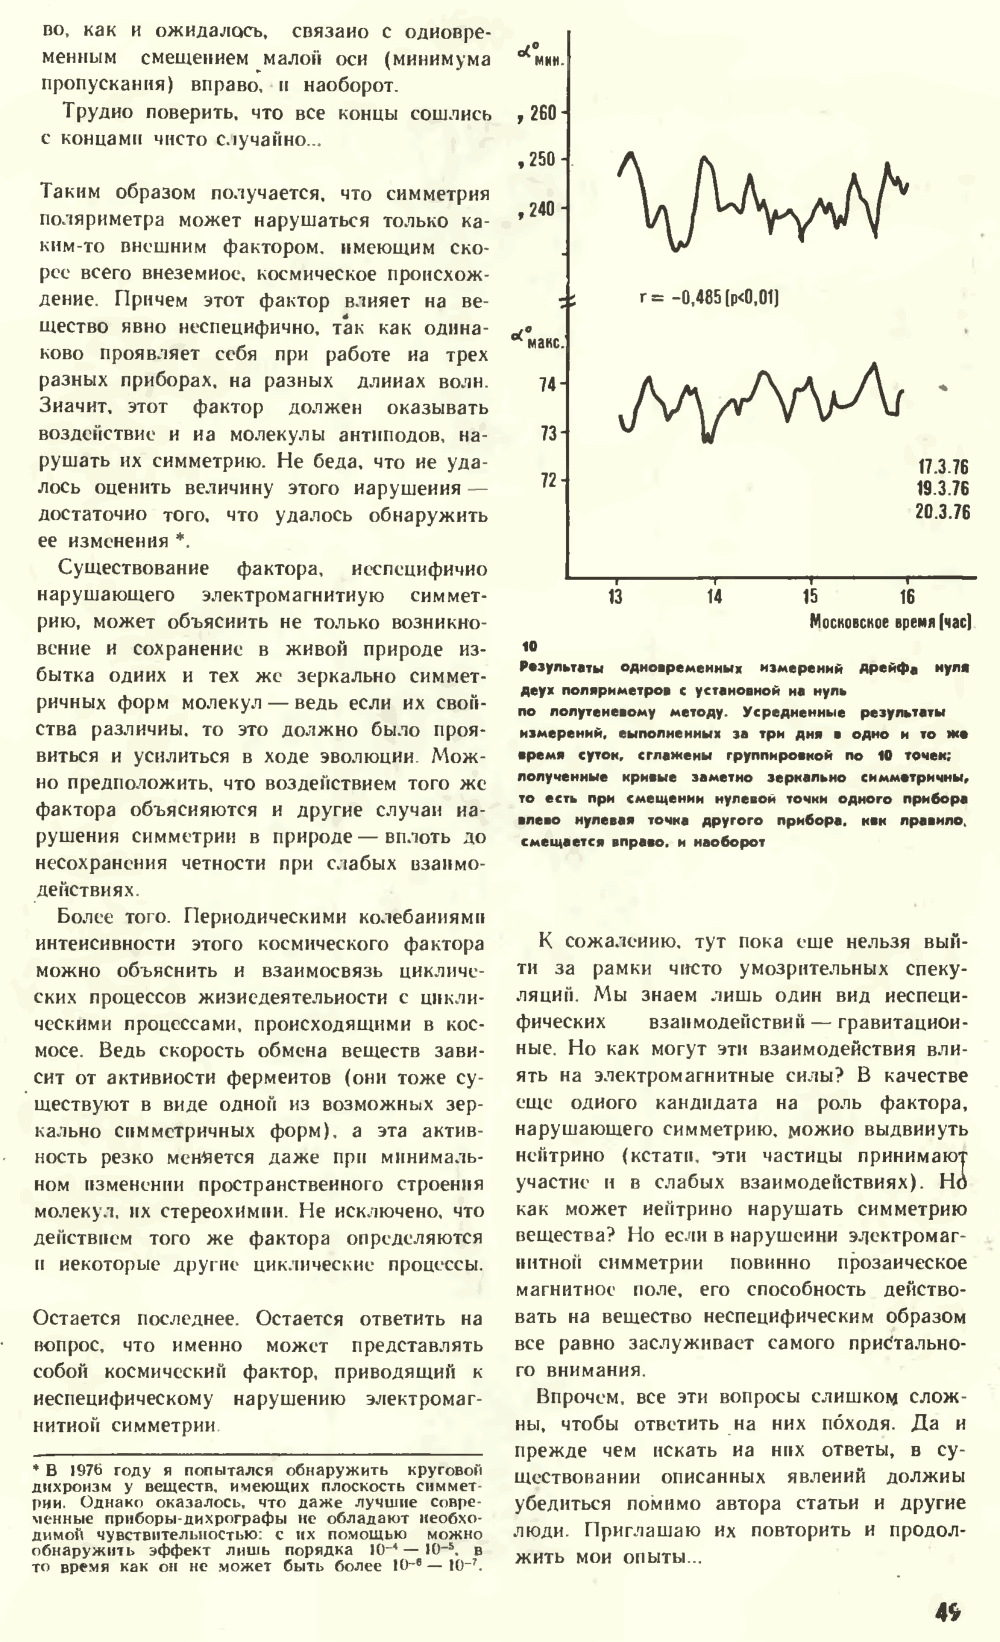 Что нарушает симметрию? В.Е. Жвирблис. Химия и жизнь, 1977, №12, с.42-49. Фотокопия №8